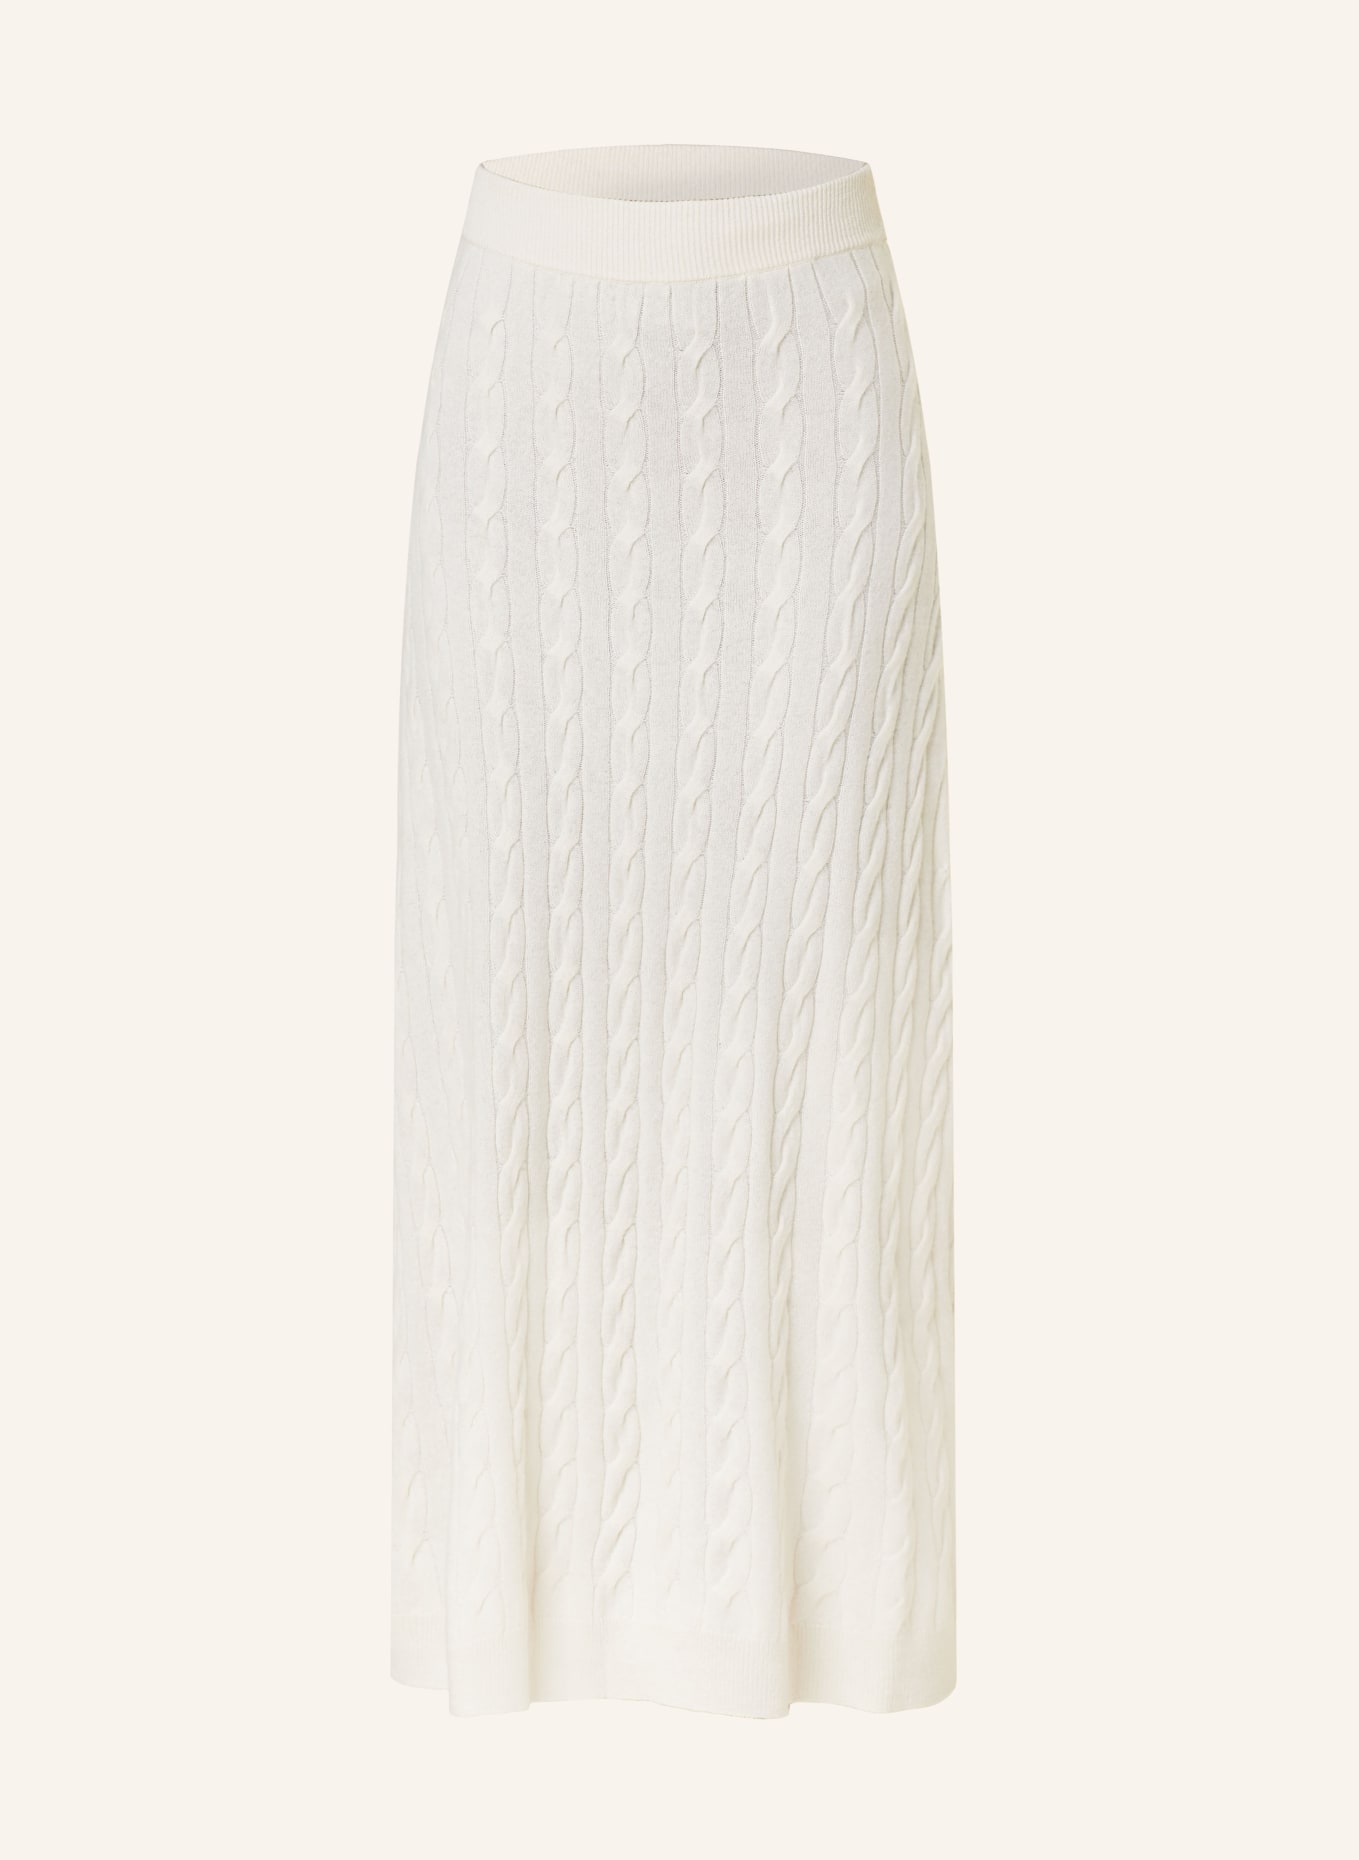 LISA YANG Knit skirt in cashmere, Color: ECRU (Image 1)